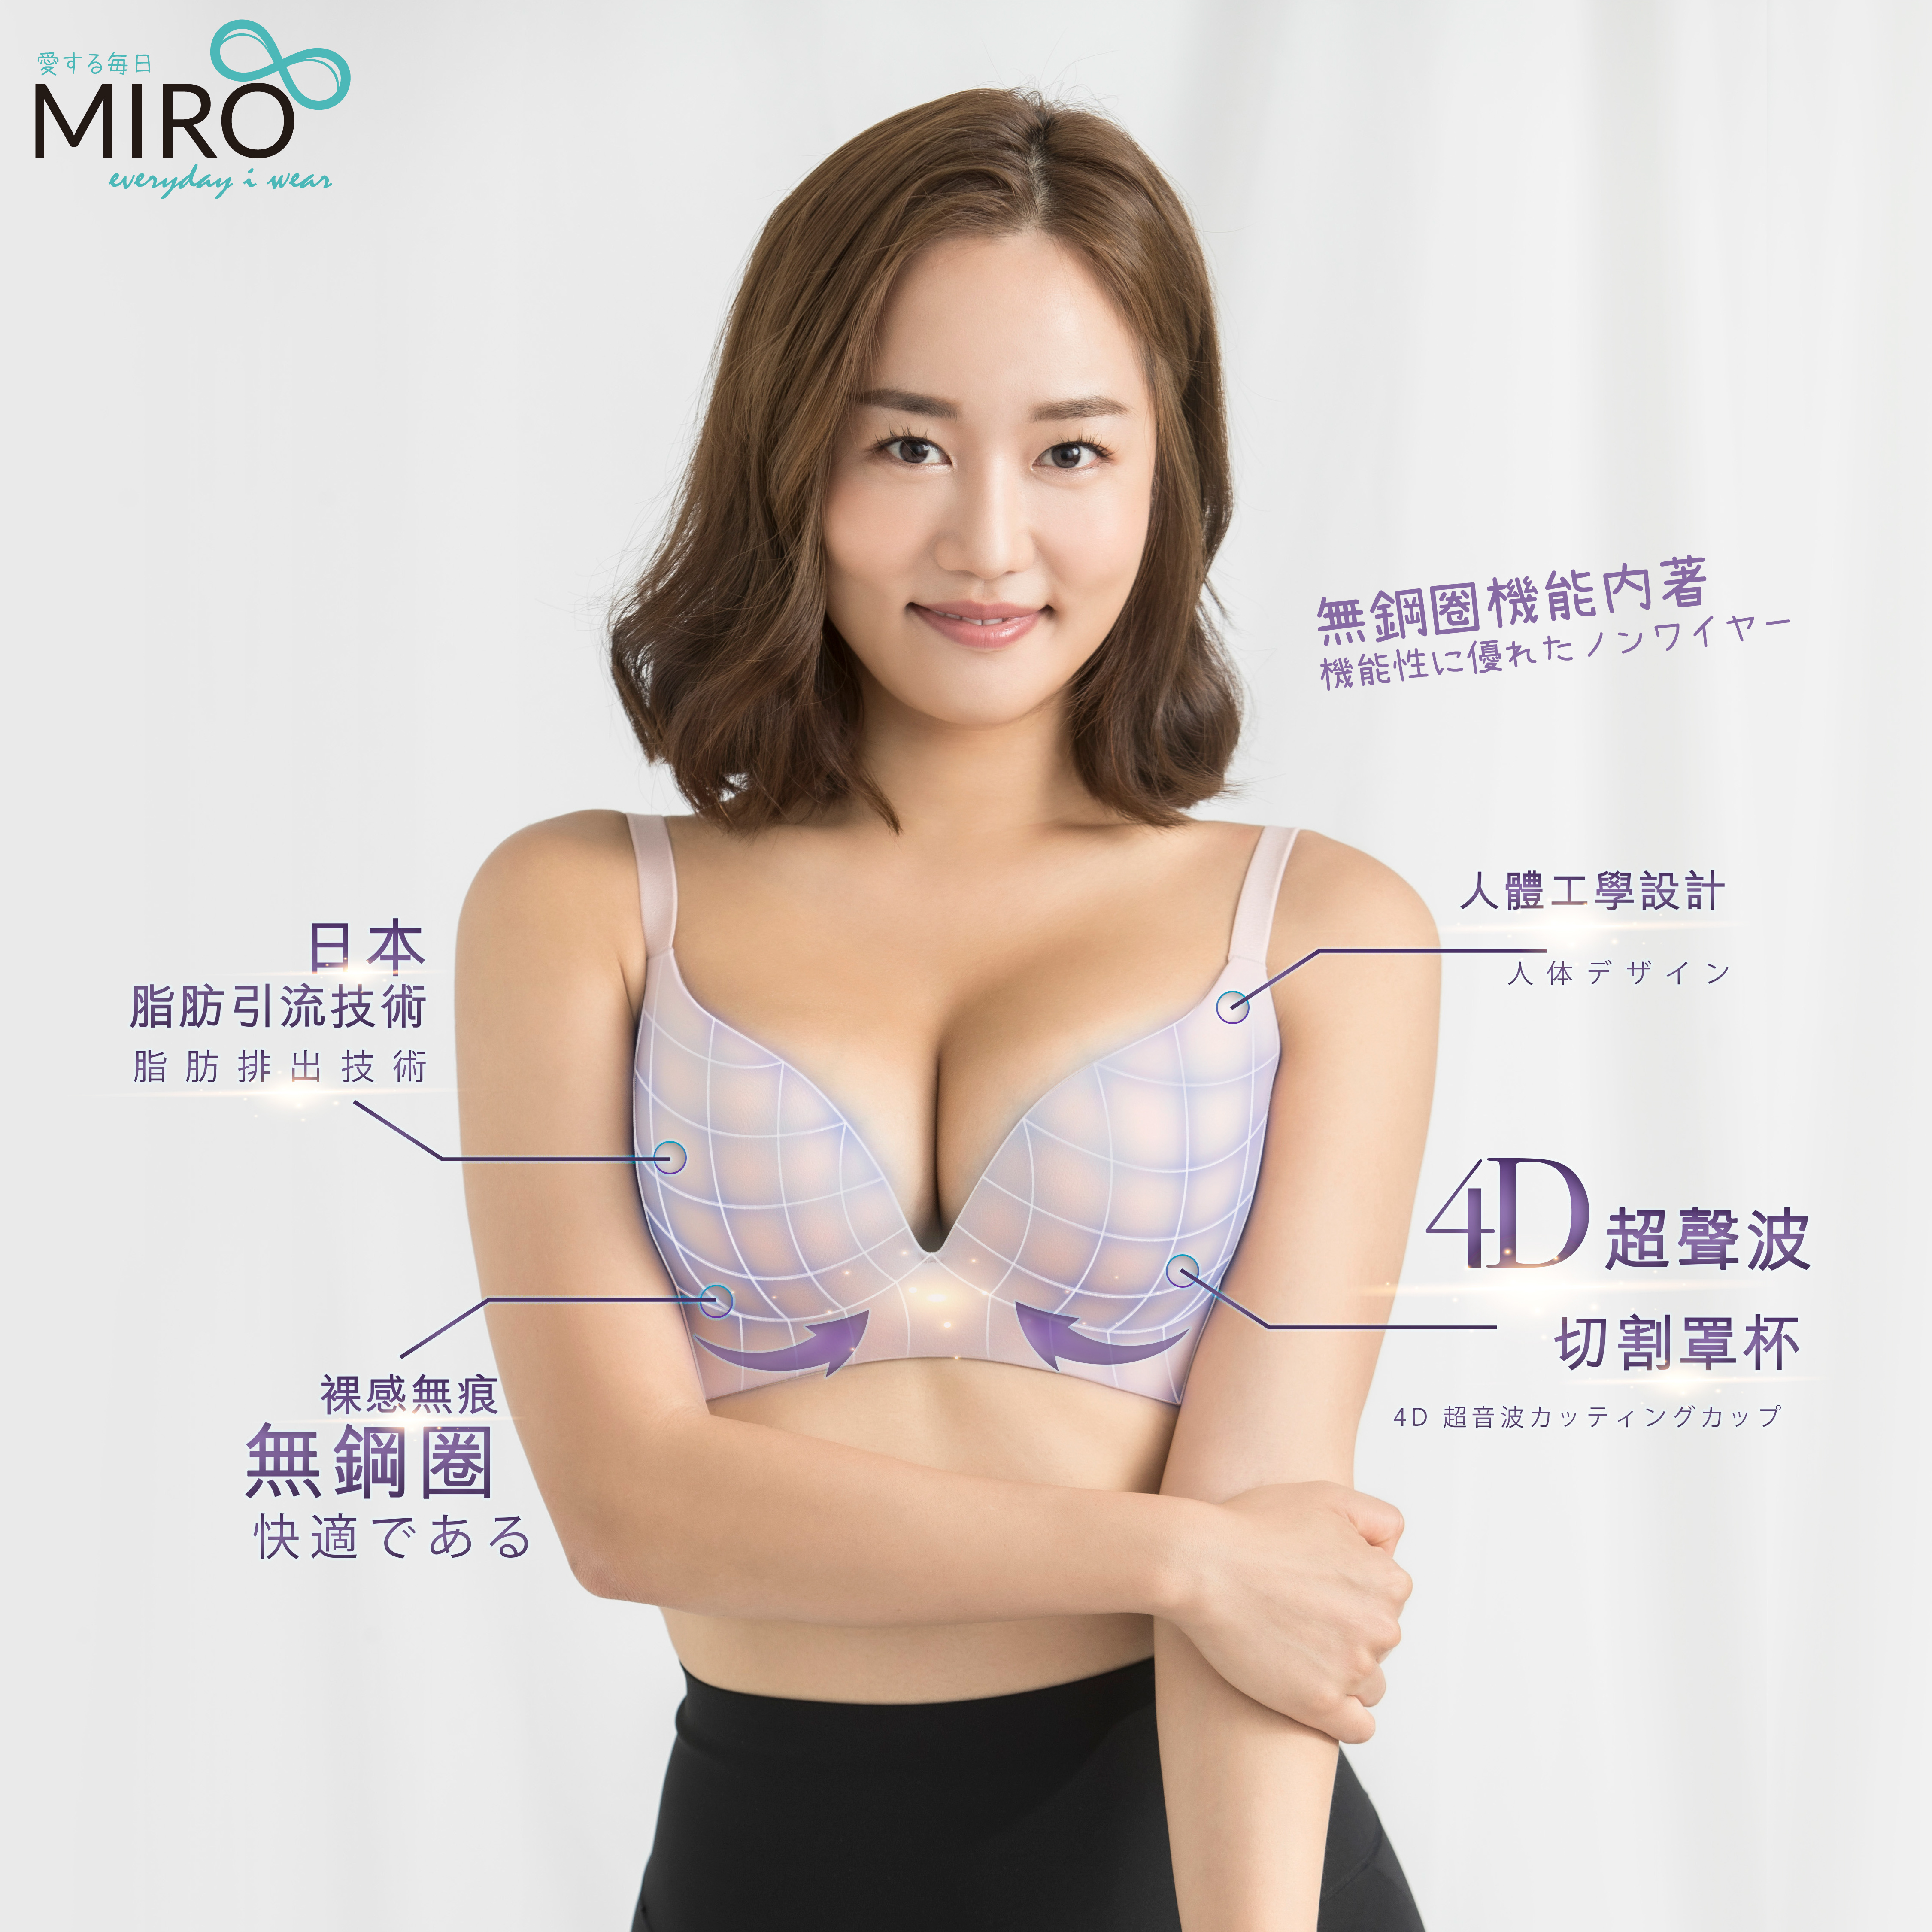 Miro bra 正價68折代購, 女裝, 內衣和休閒服- Carousell